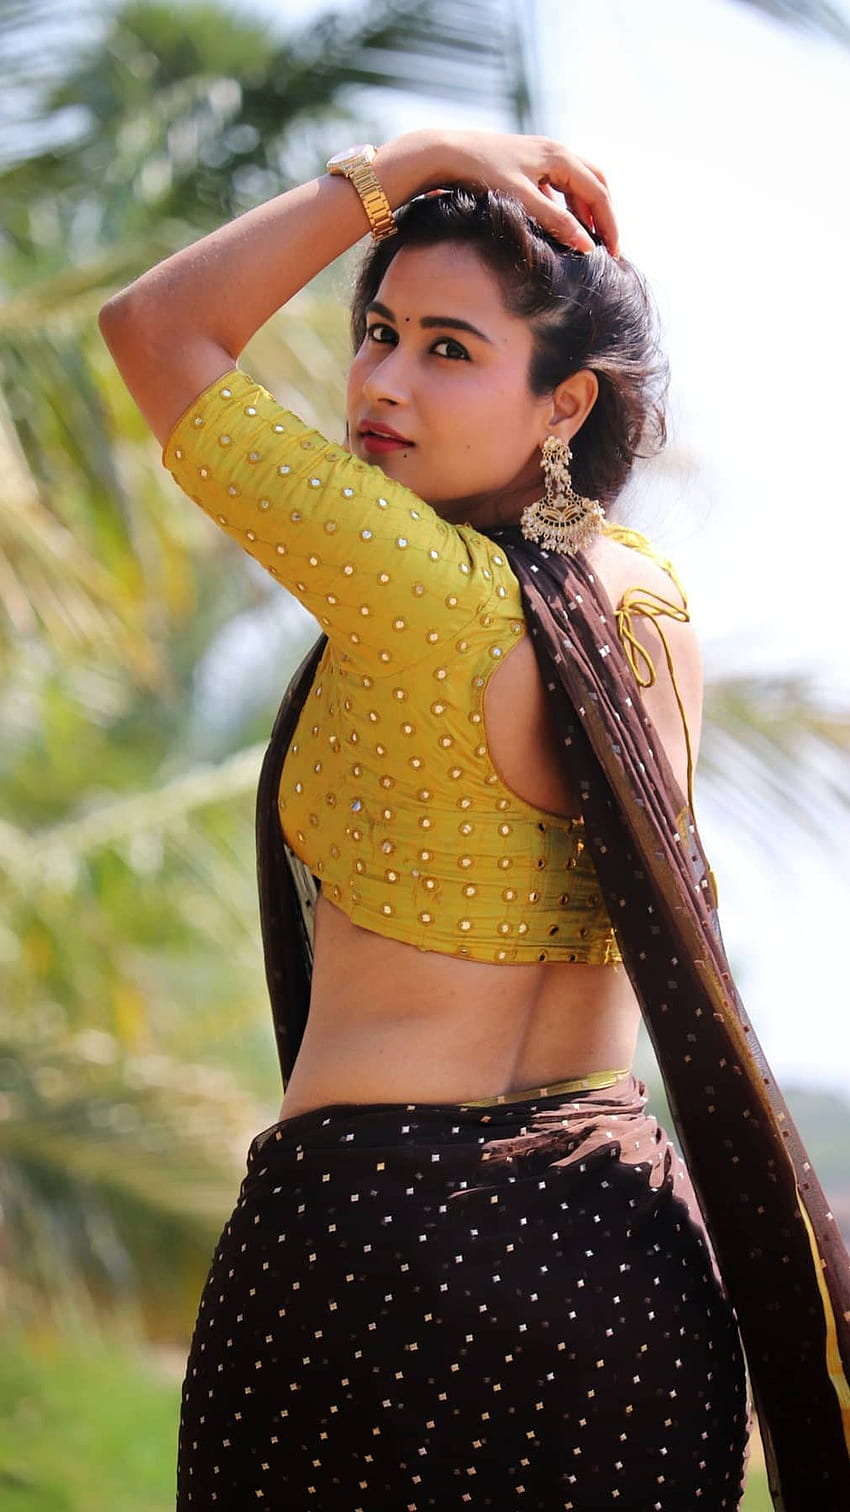 Kanchan bamne , actrice telugu, amoureuse du sari Fond d'écran de téléphone HD